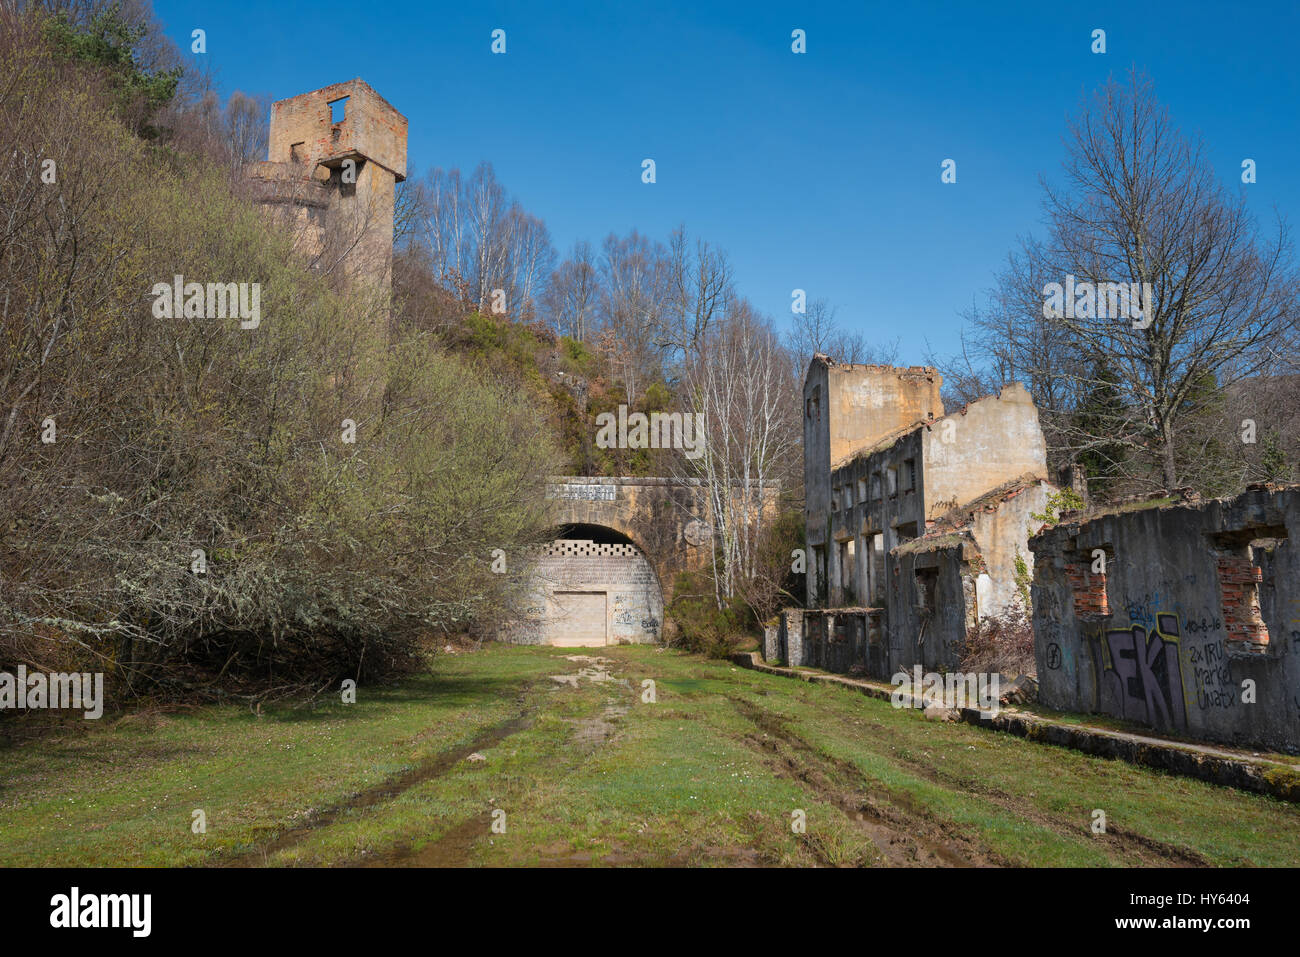 Fachada del antiguo túnel de ferrocarril abandonados La Engana, entre la provincia de Burgos y Cantabria, España. Foto de stock